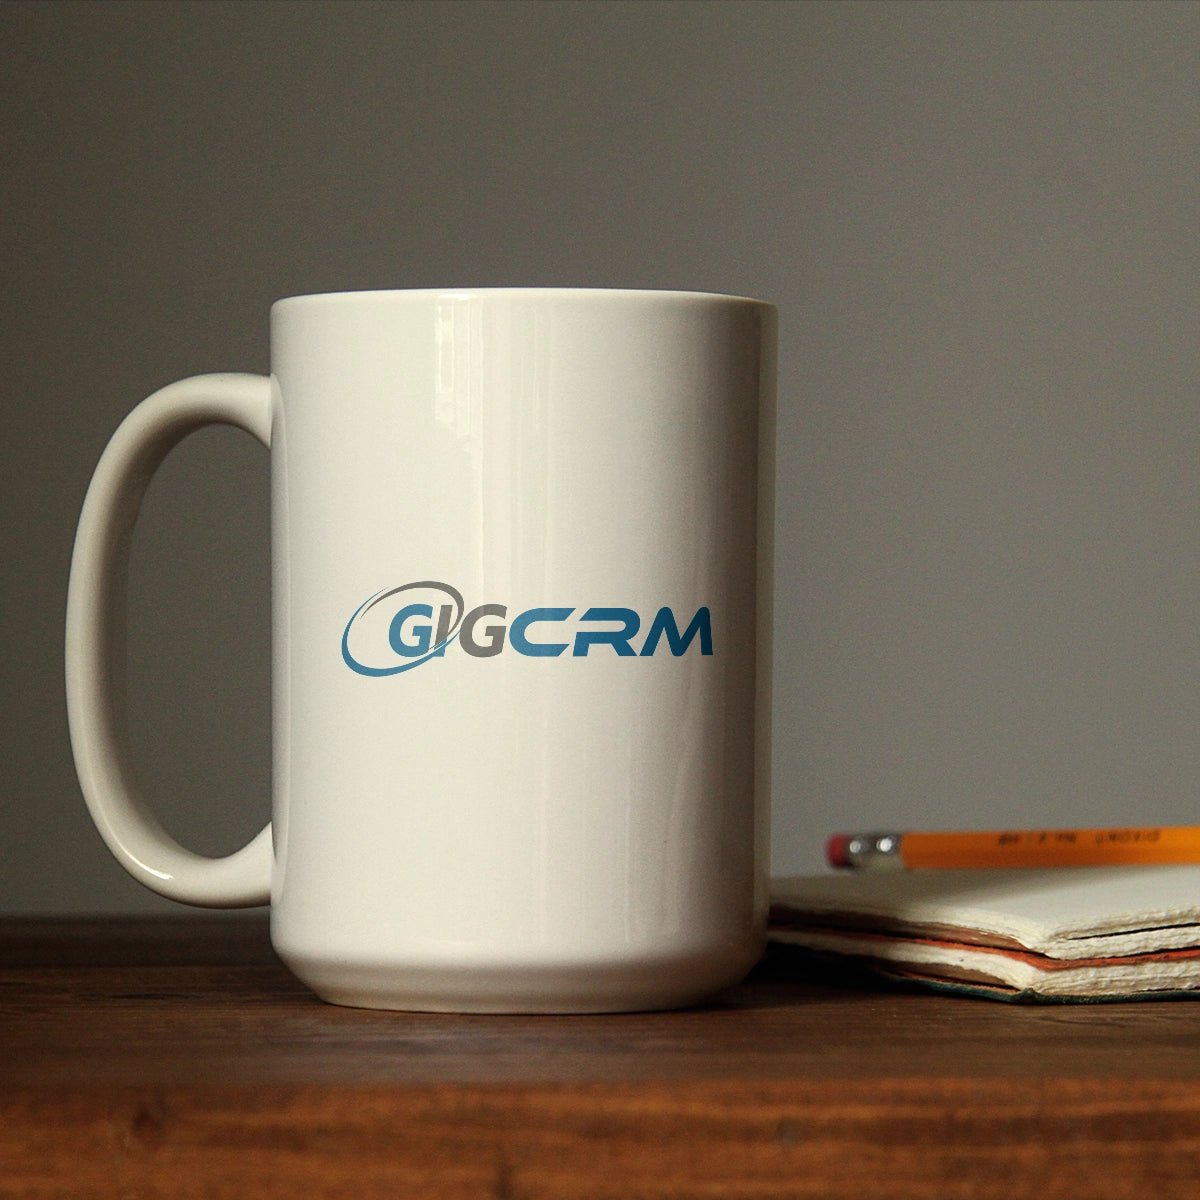 gigcrm.com